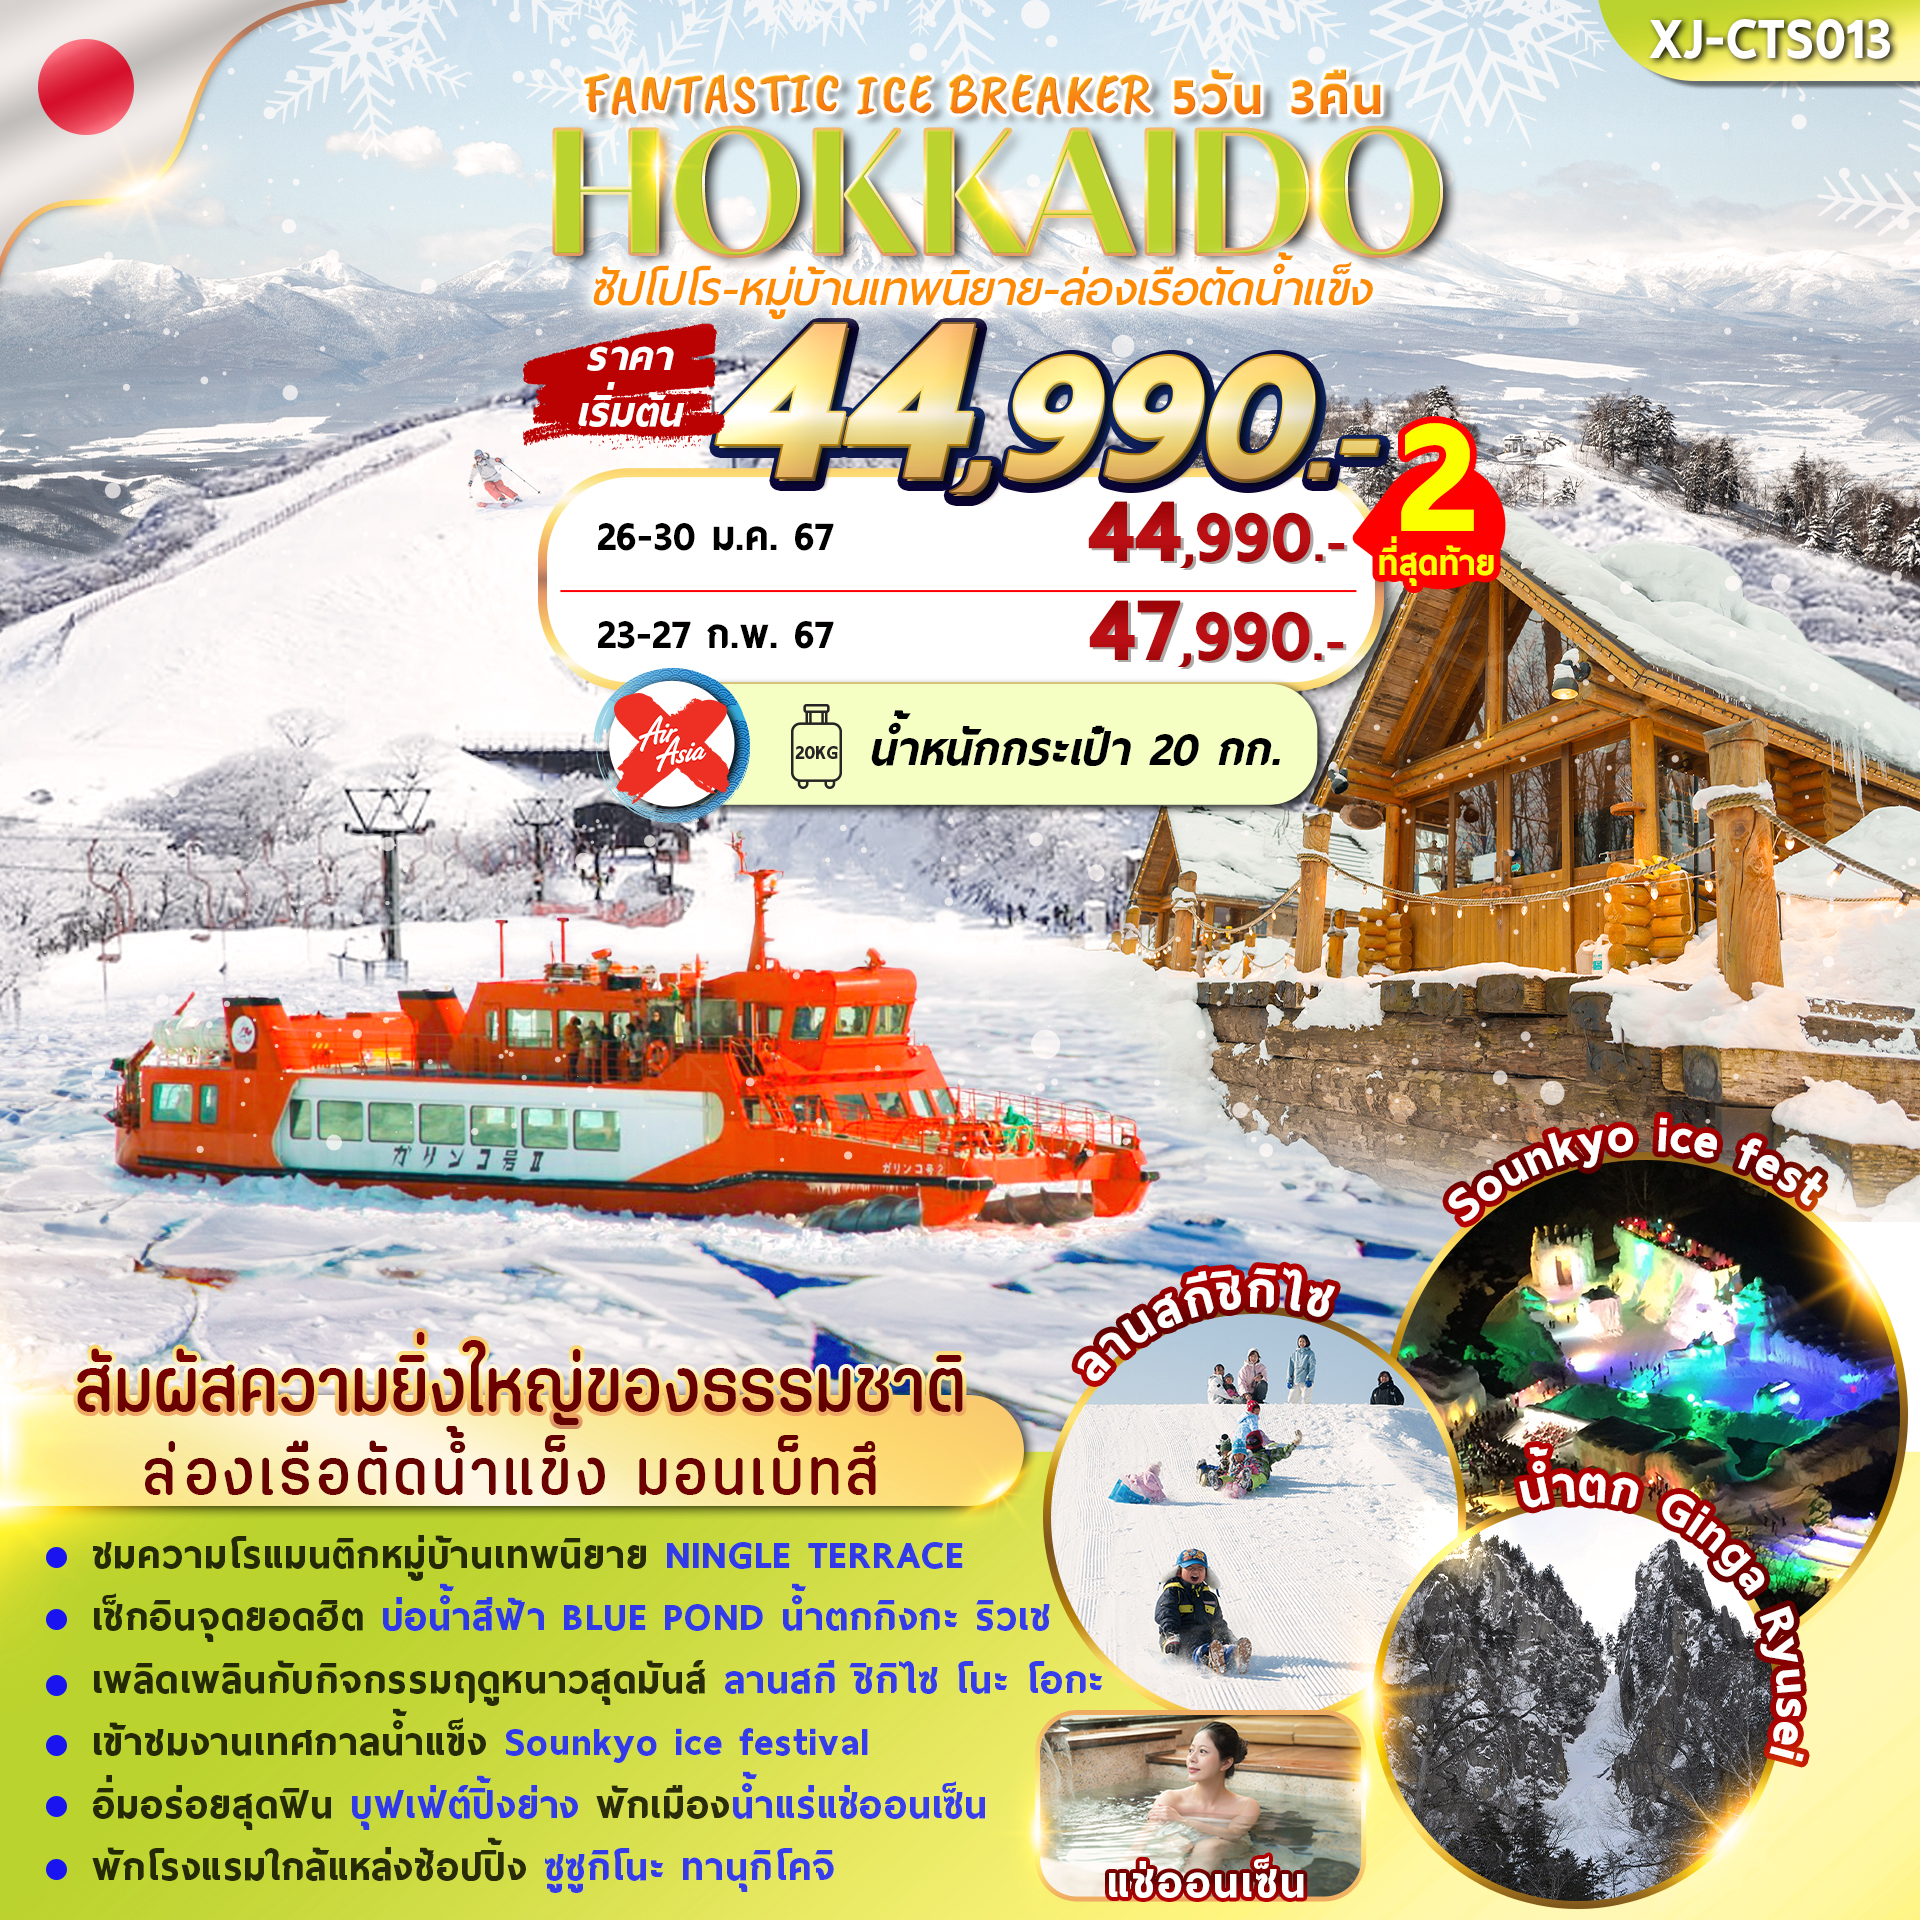 HOKKAIDO FANTASTIC WINTER ICE BREAKER 5D3N